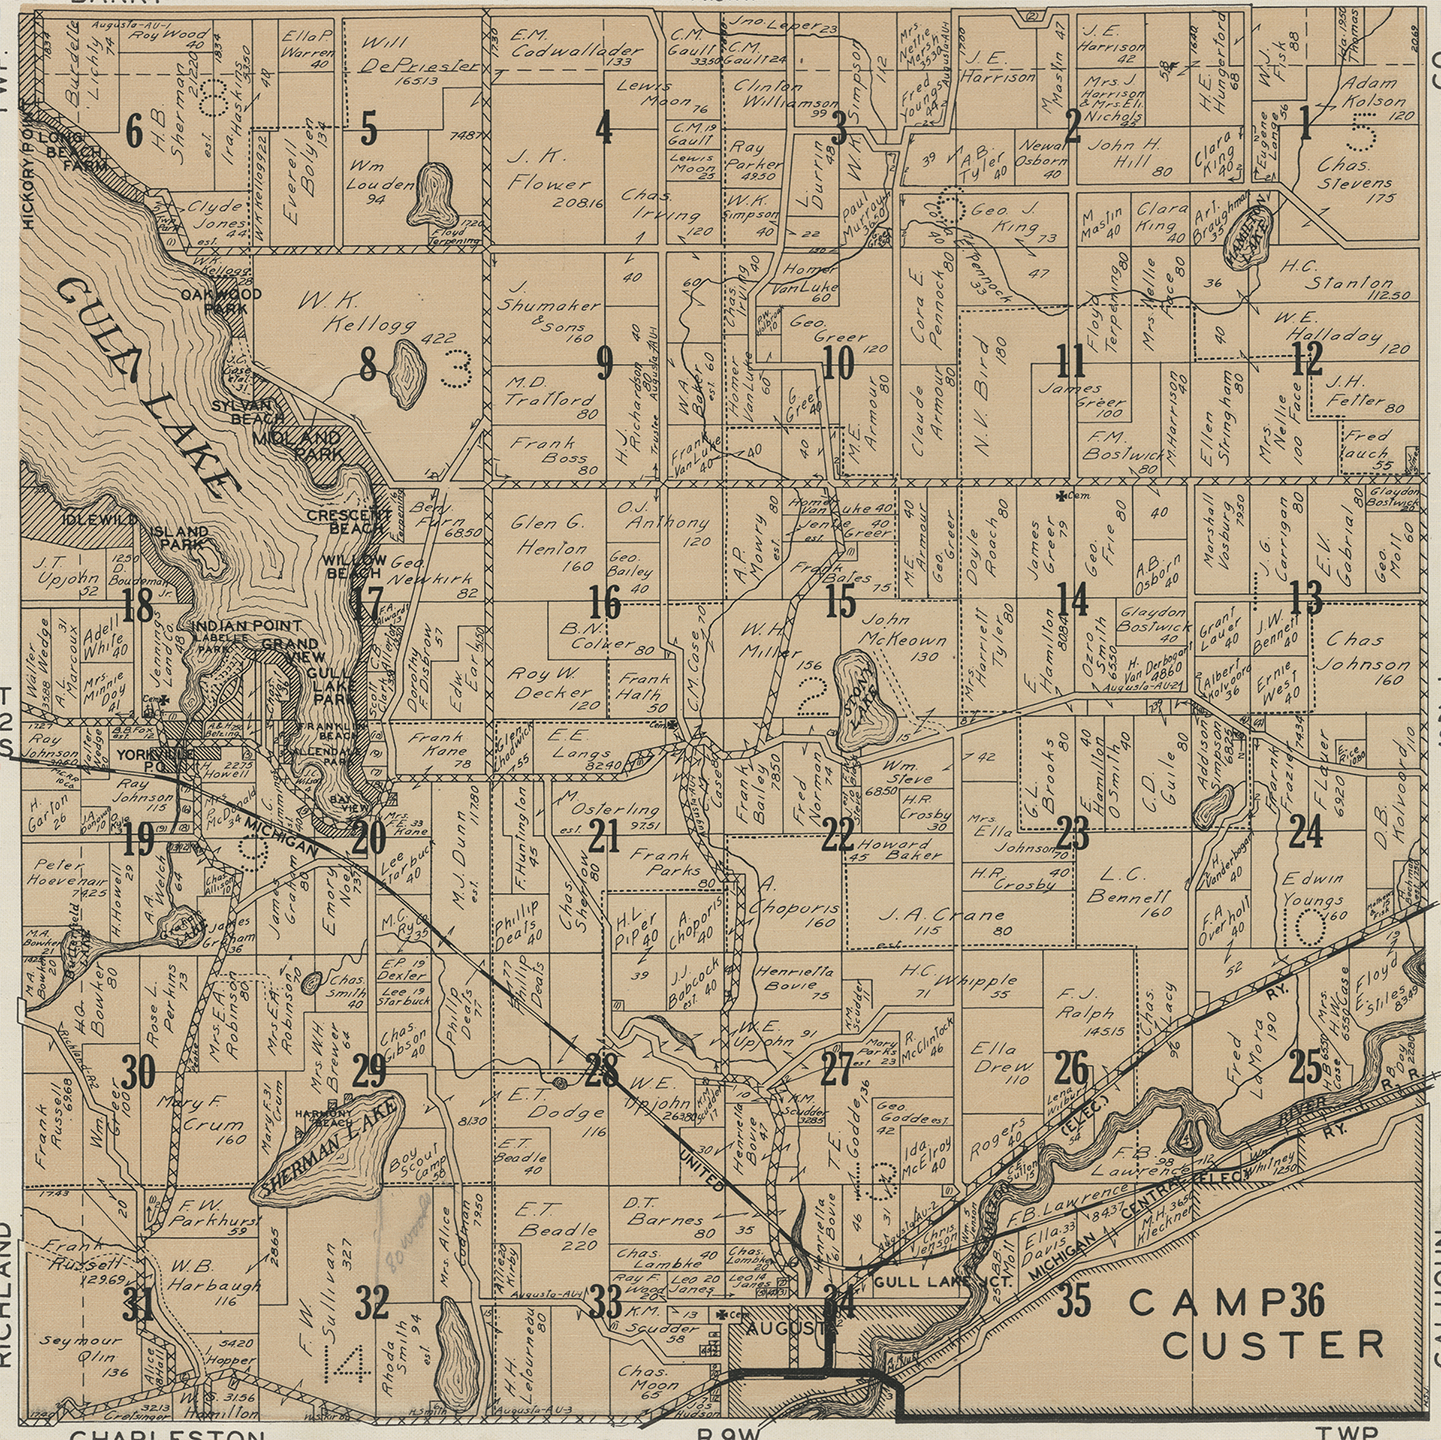 1928 Ross Township Michigan landownership map